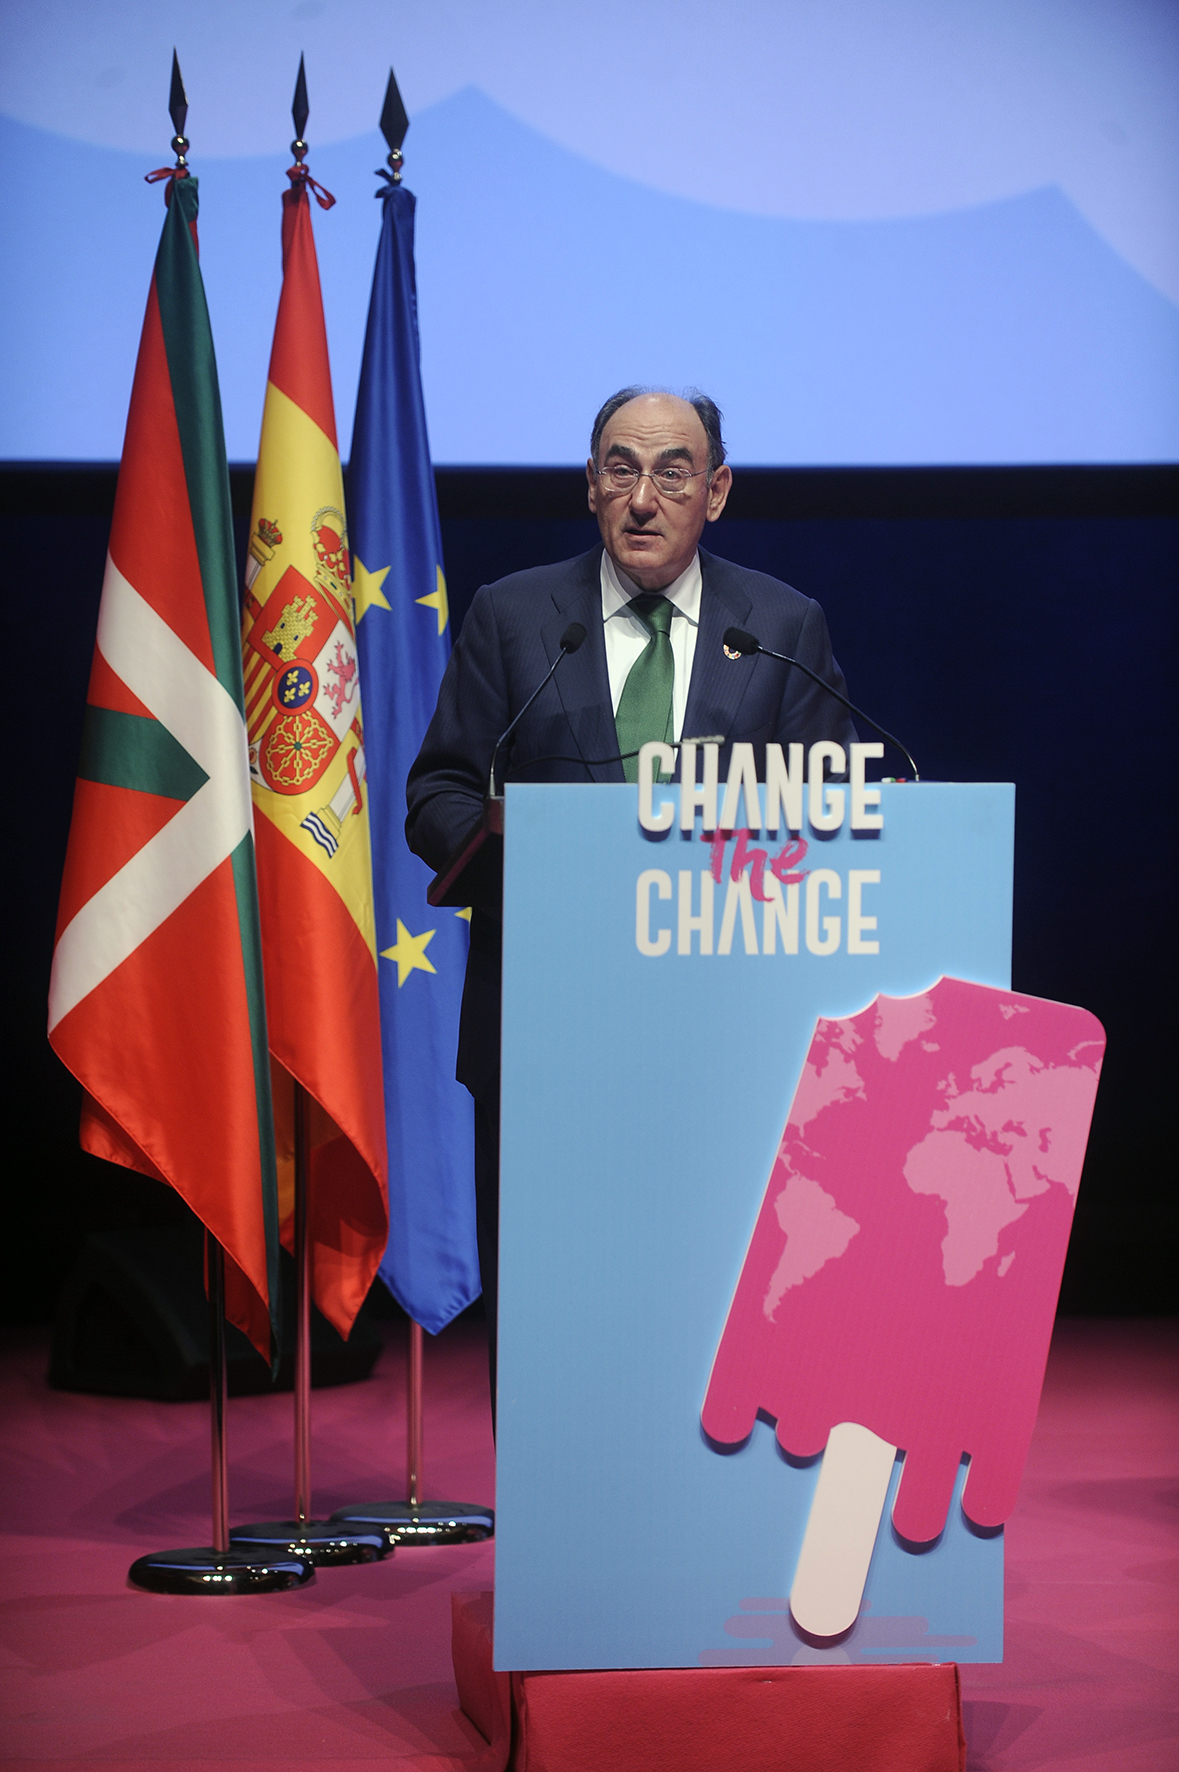 El presidente de Iberdrola Ignacio Galán en la conferencia por el clima Change the Change